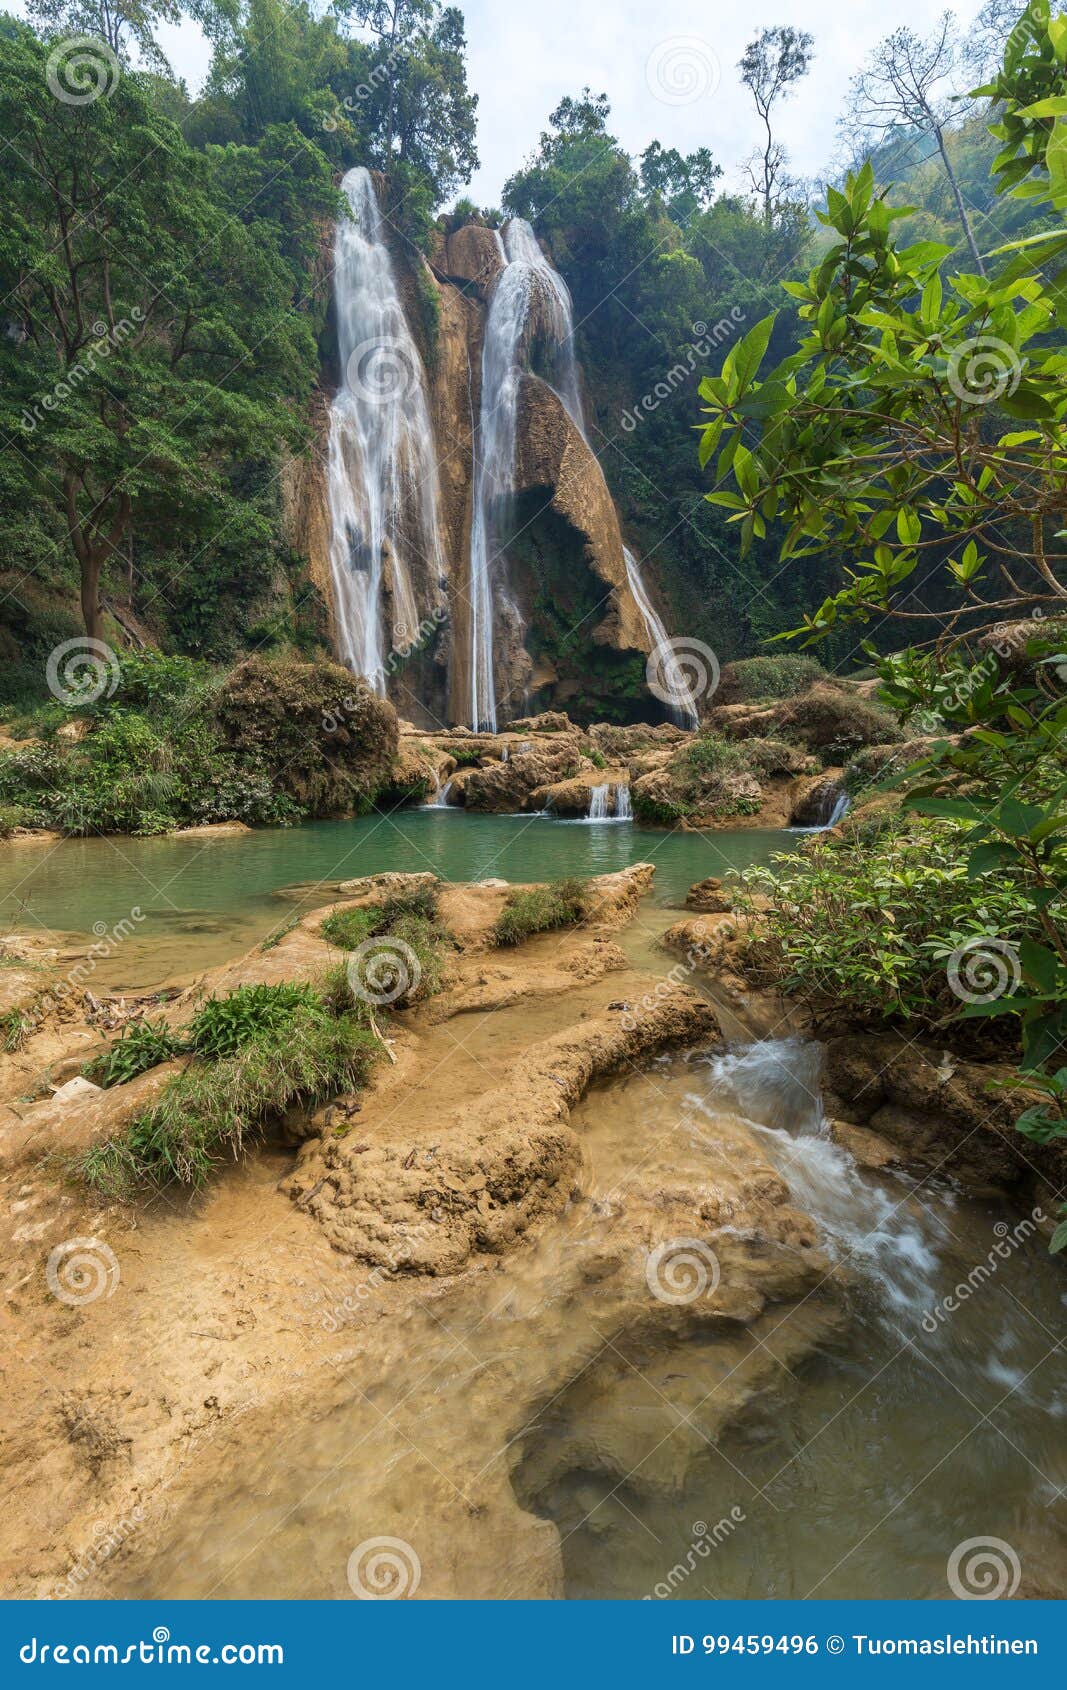 dat taw gyaint waterfall in myanmar